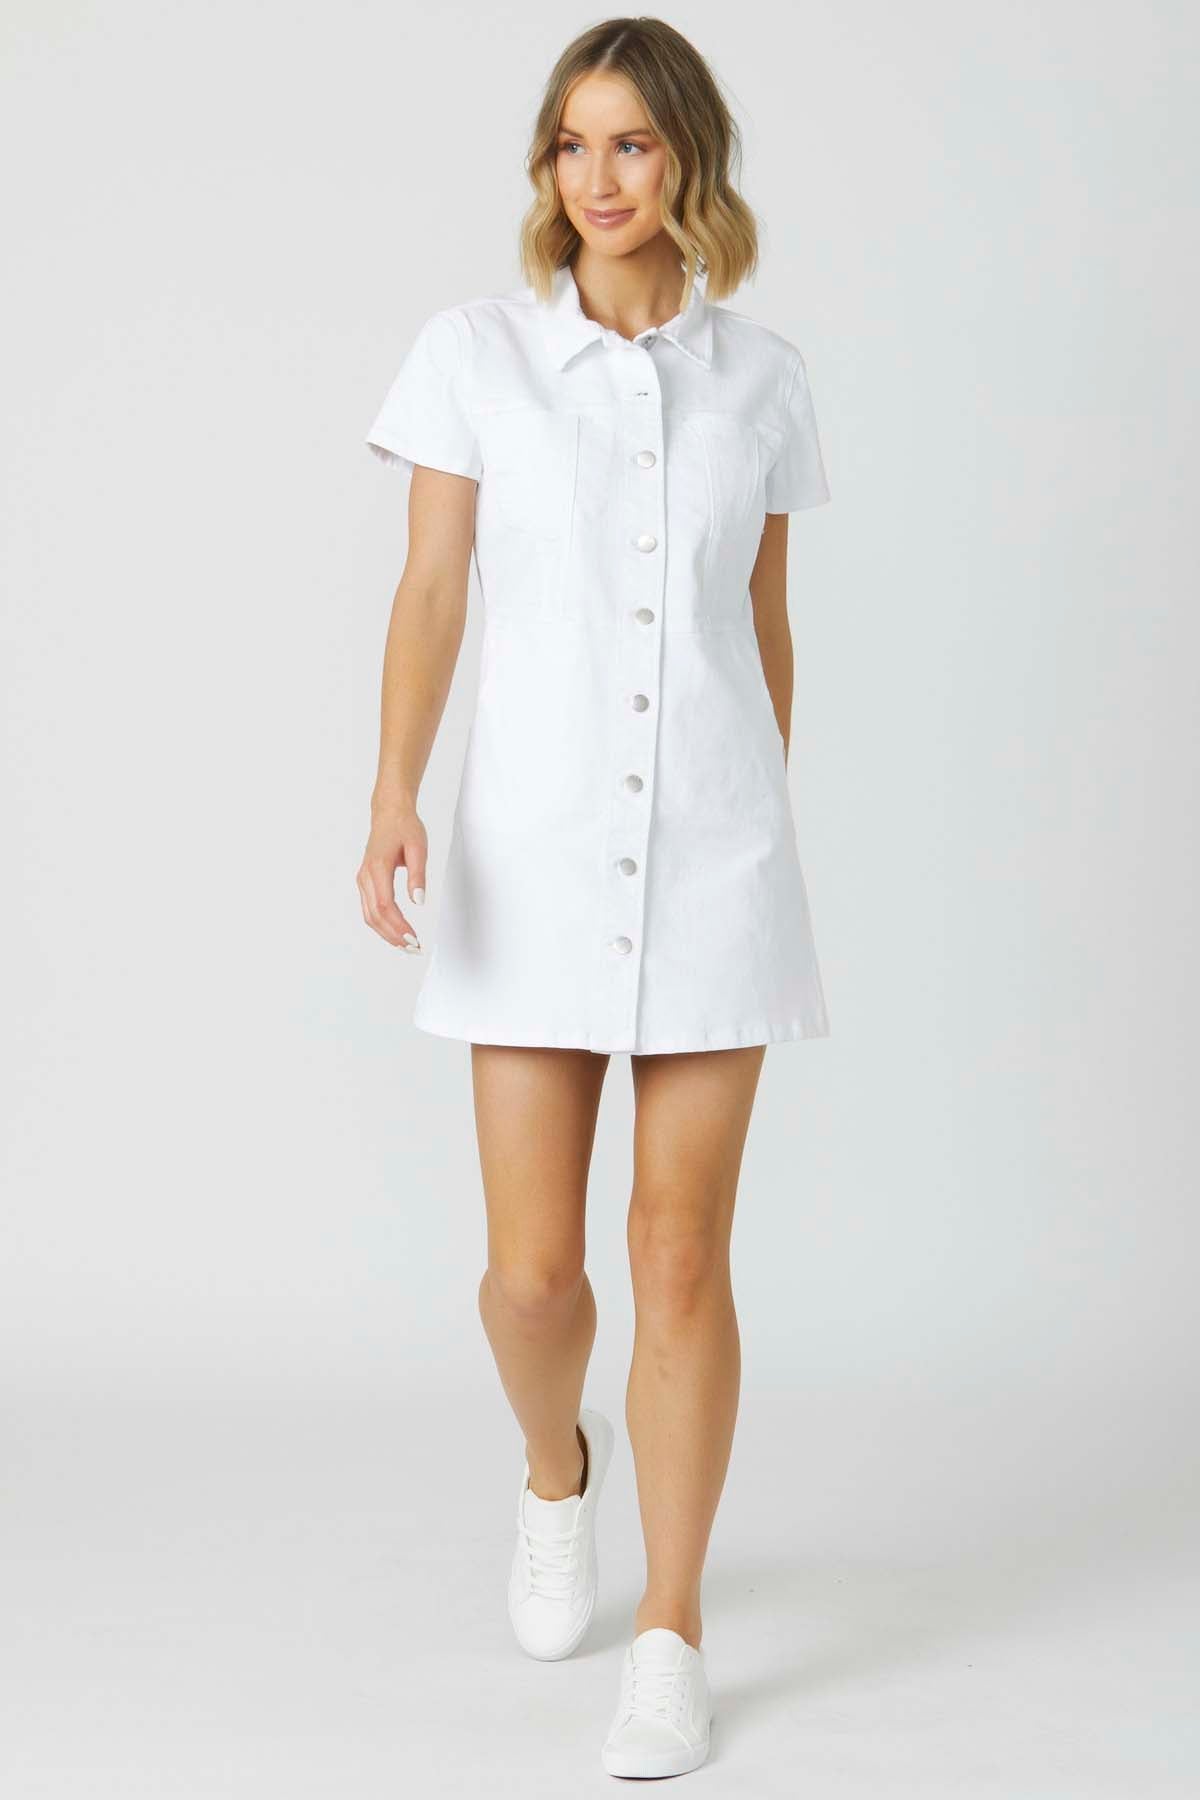 Sass Angie Denim Mini Dress in White - Hey Sara